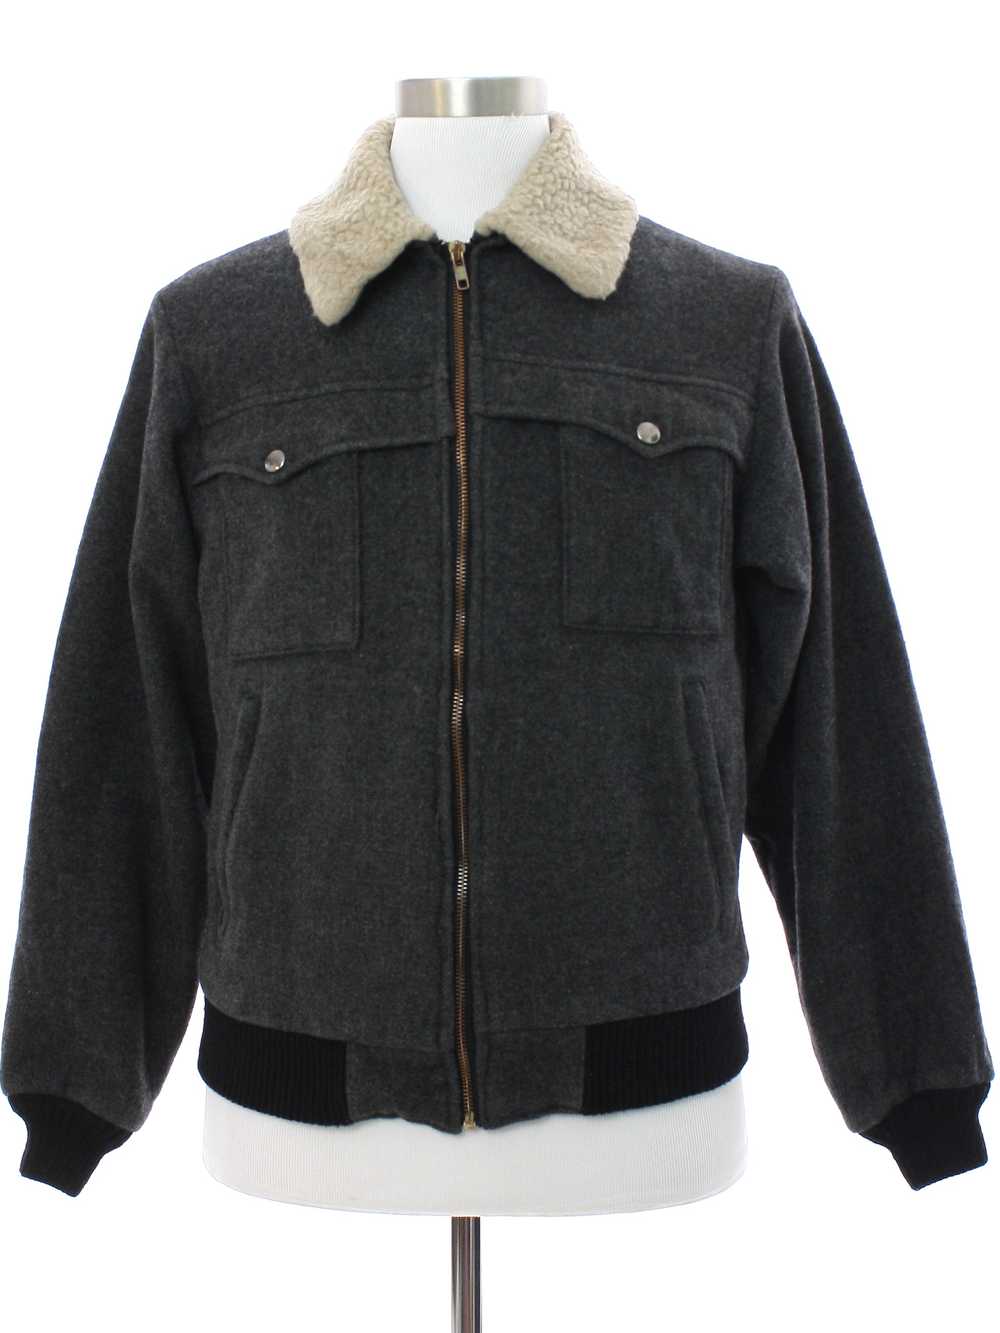 1970's Pendleton Mens Wool Jacket - image 1